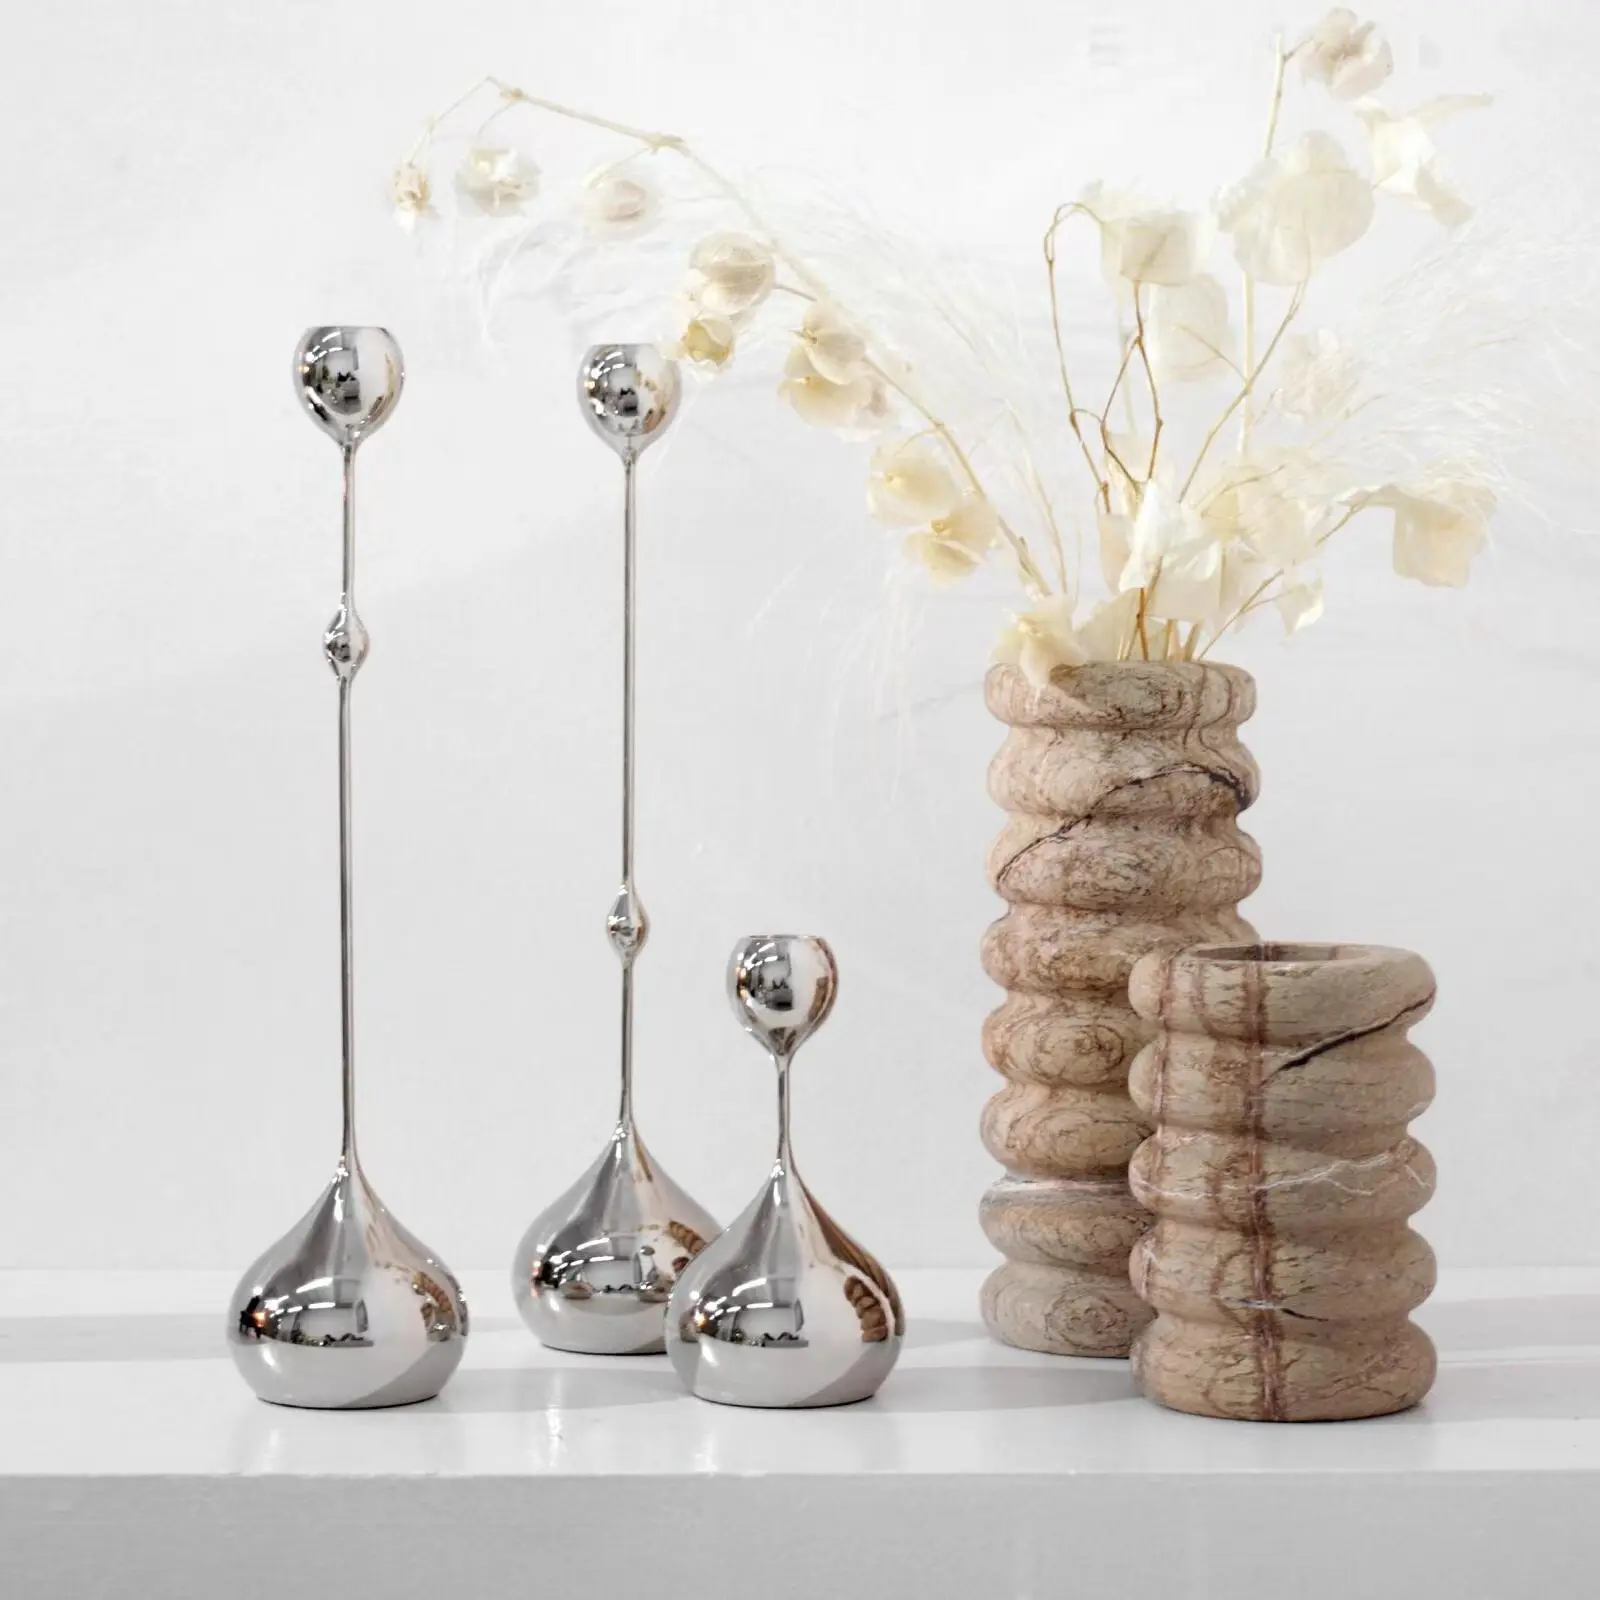 शादी के सजावटी मोमबत्ती धारक यूरोपीय शैली धातु मोमबत्ती धारक कैंडलस्टिक धारक कैंडलस्टिक धारक सजावट घर सामान शिल्प